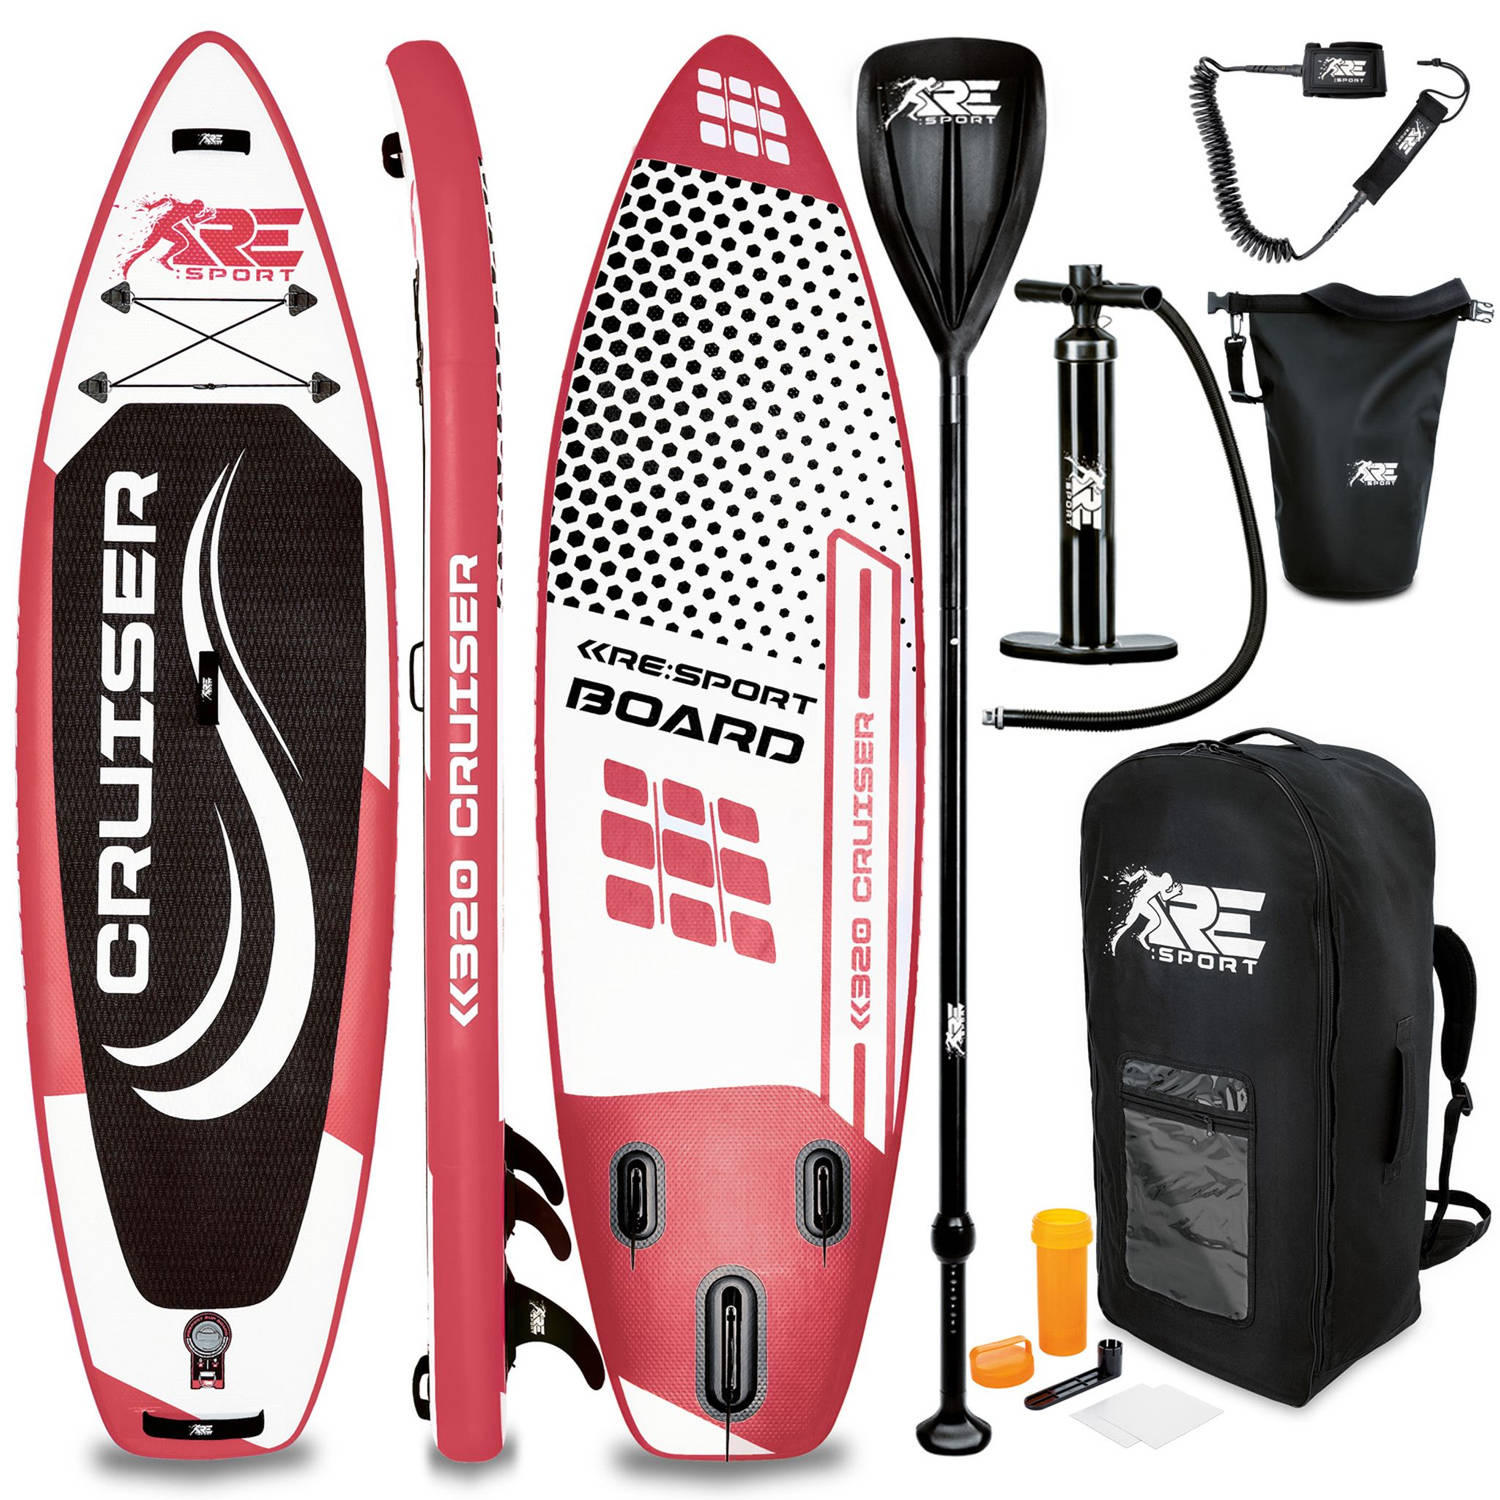 Re: Sport-sup Board 320 Cm Rood-supboard- Opblaasbaar- Stand Up Paddle Set- Surfboard --Paddling Pre